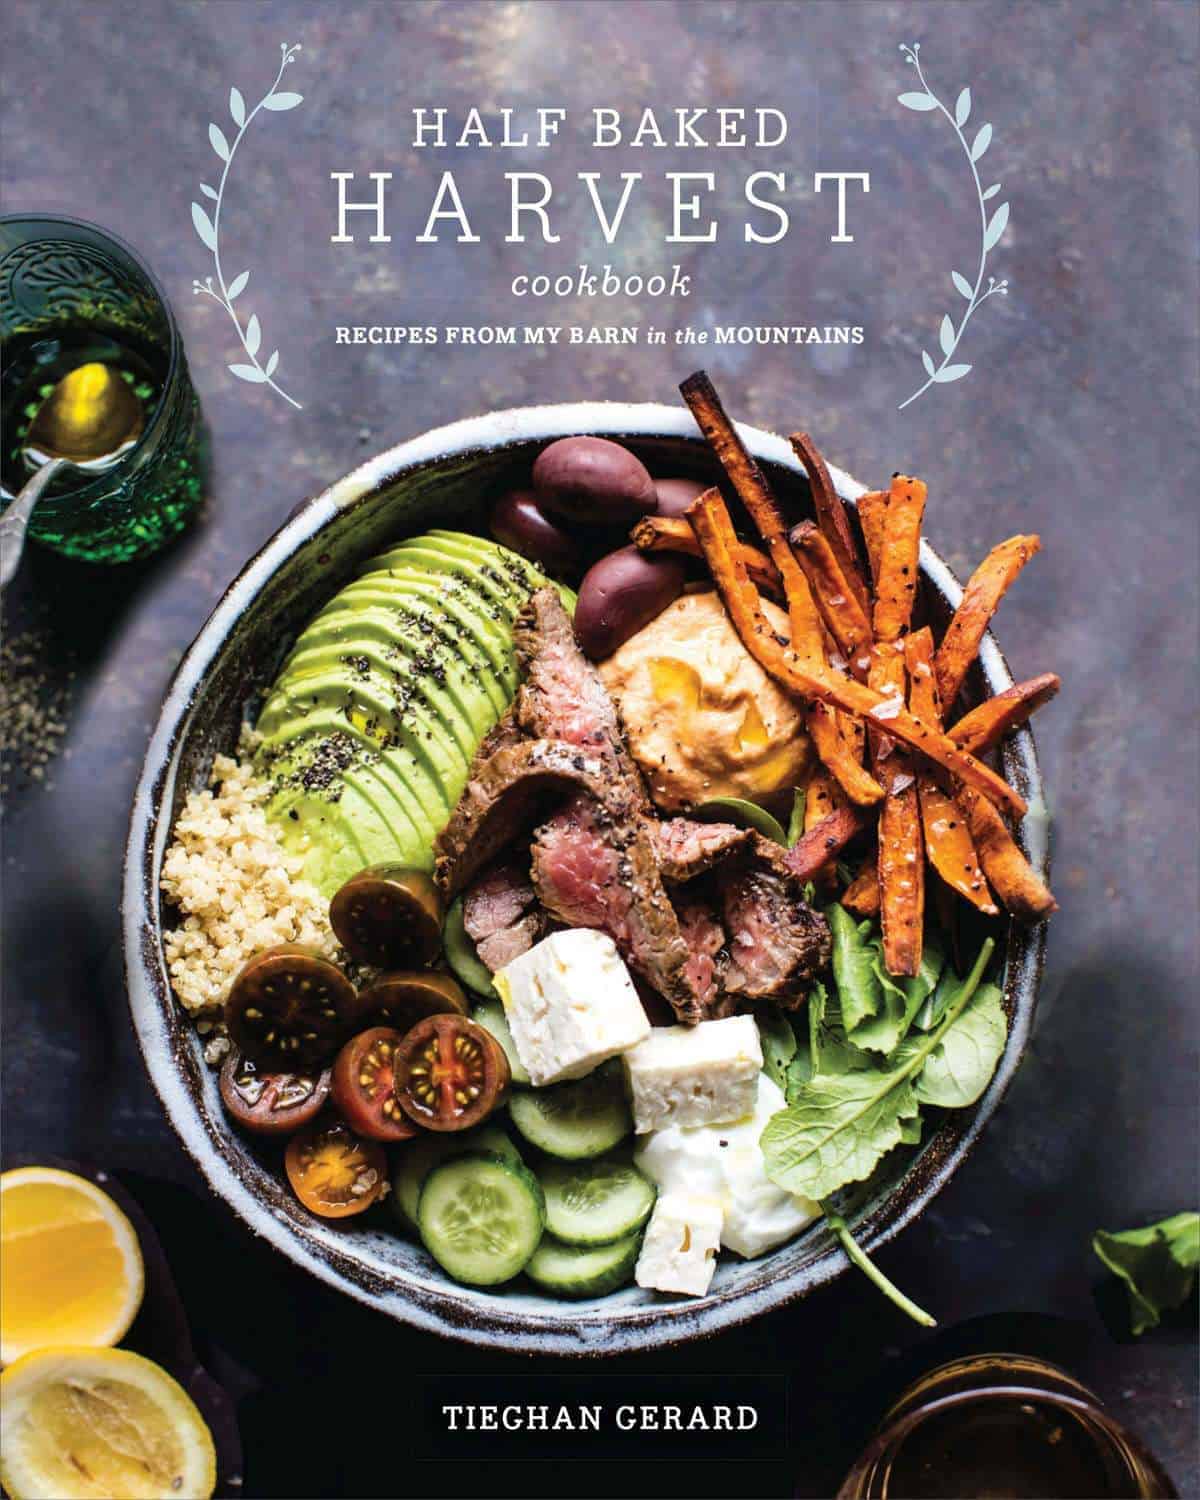 The Half Baked Harvest Cookbook